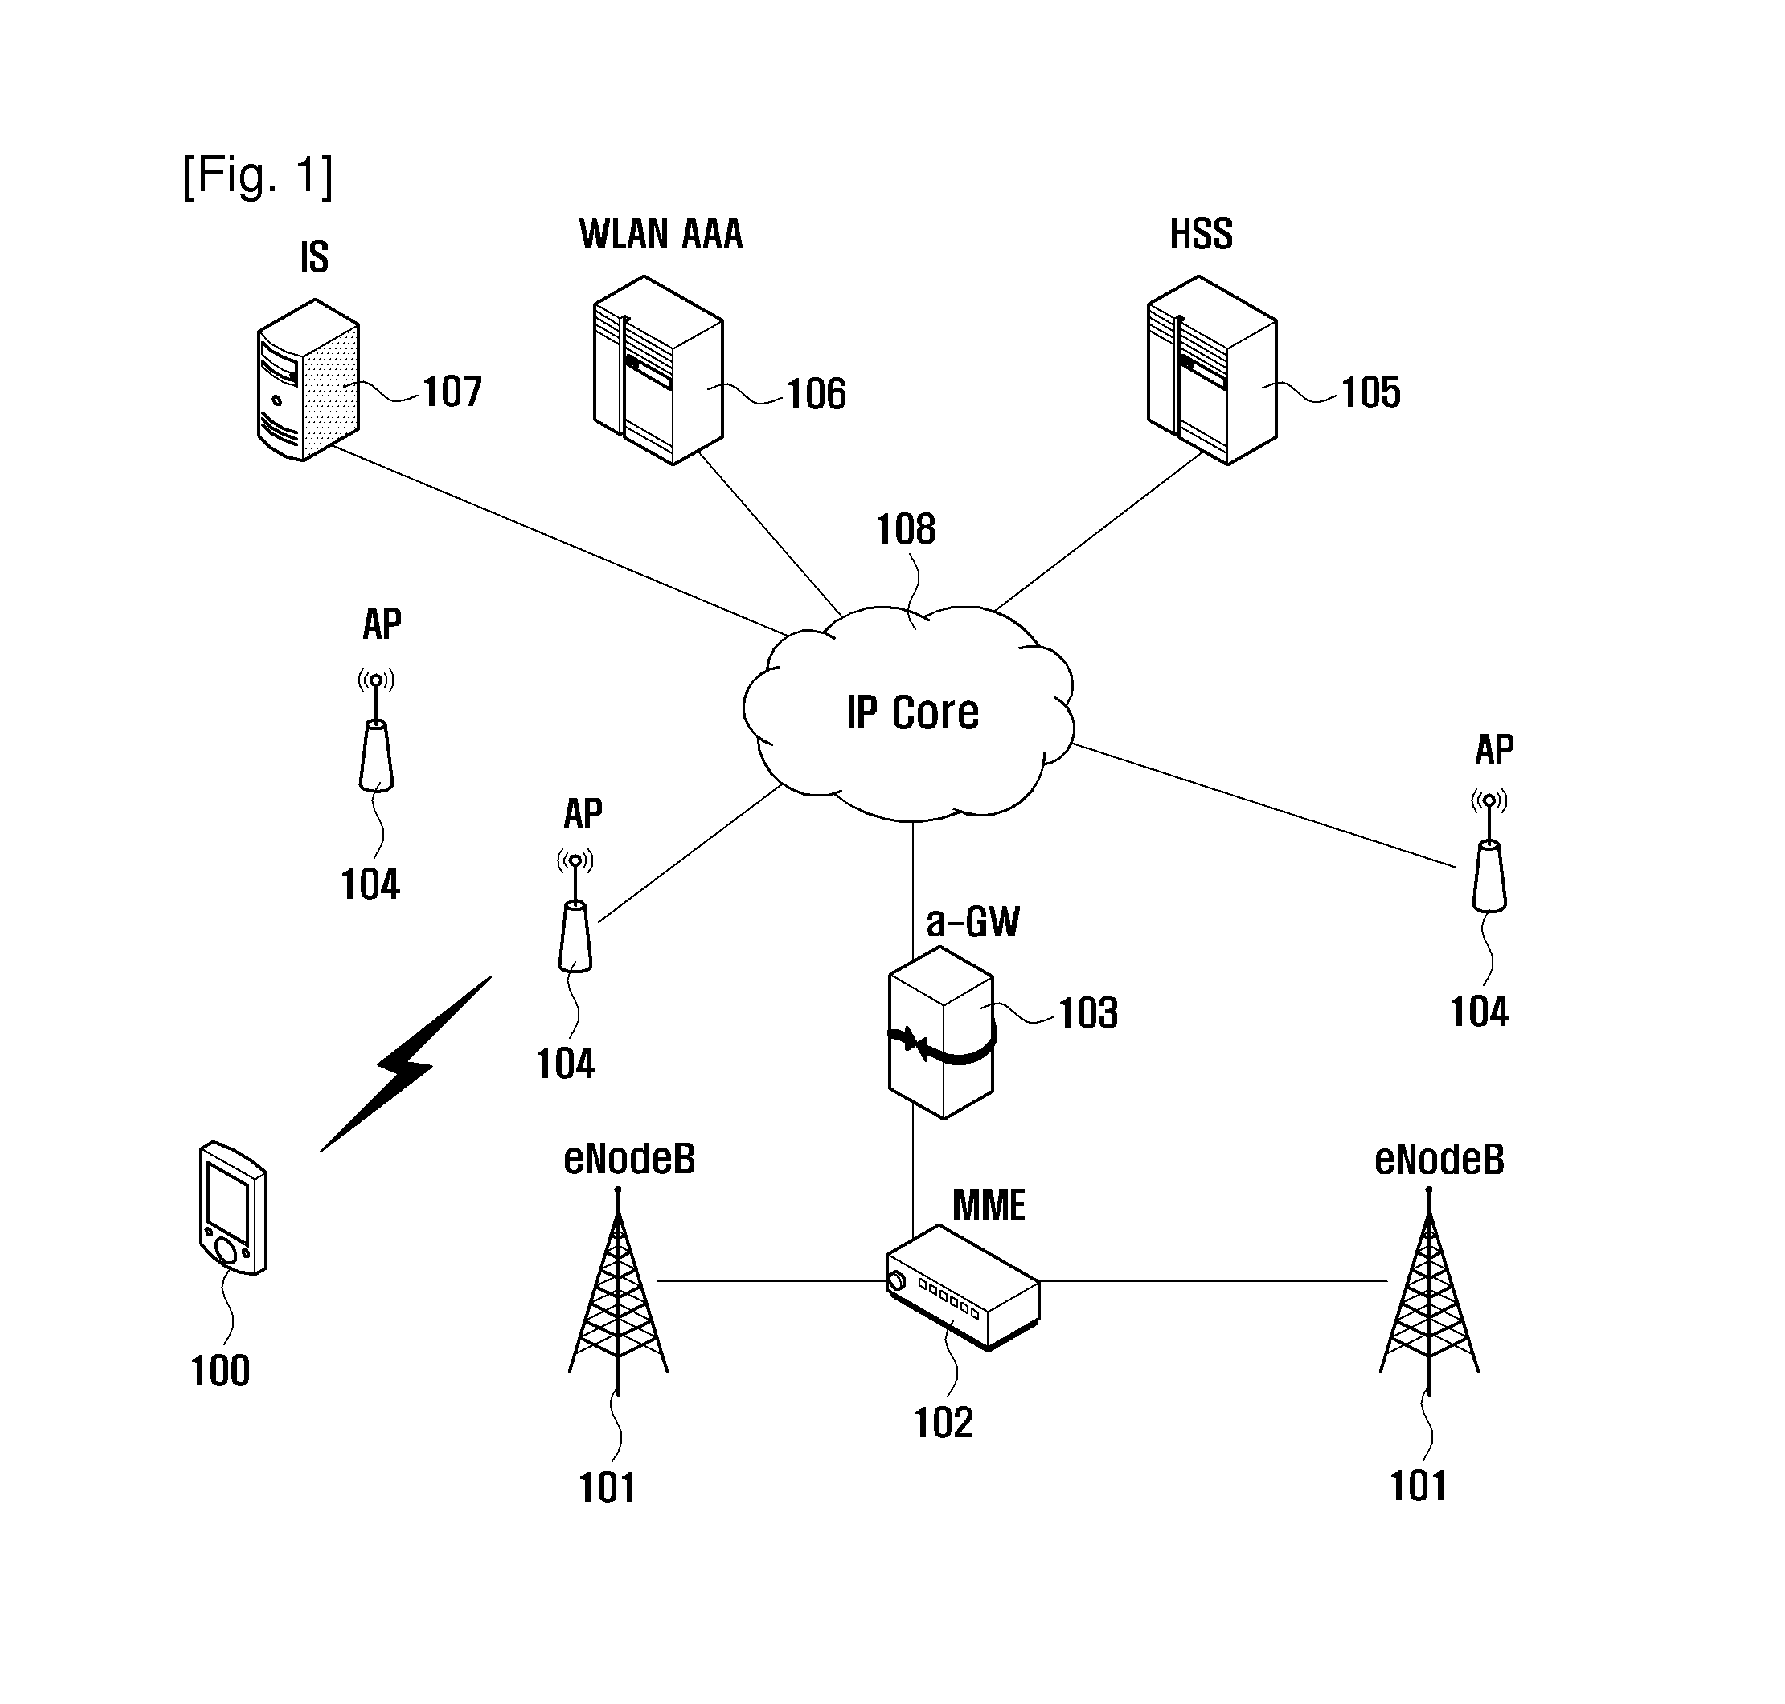 Handover method of mobile terminal between heterogeneous networks